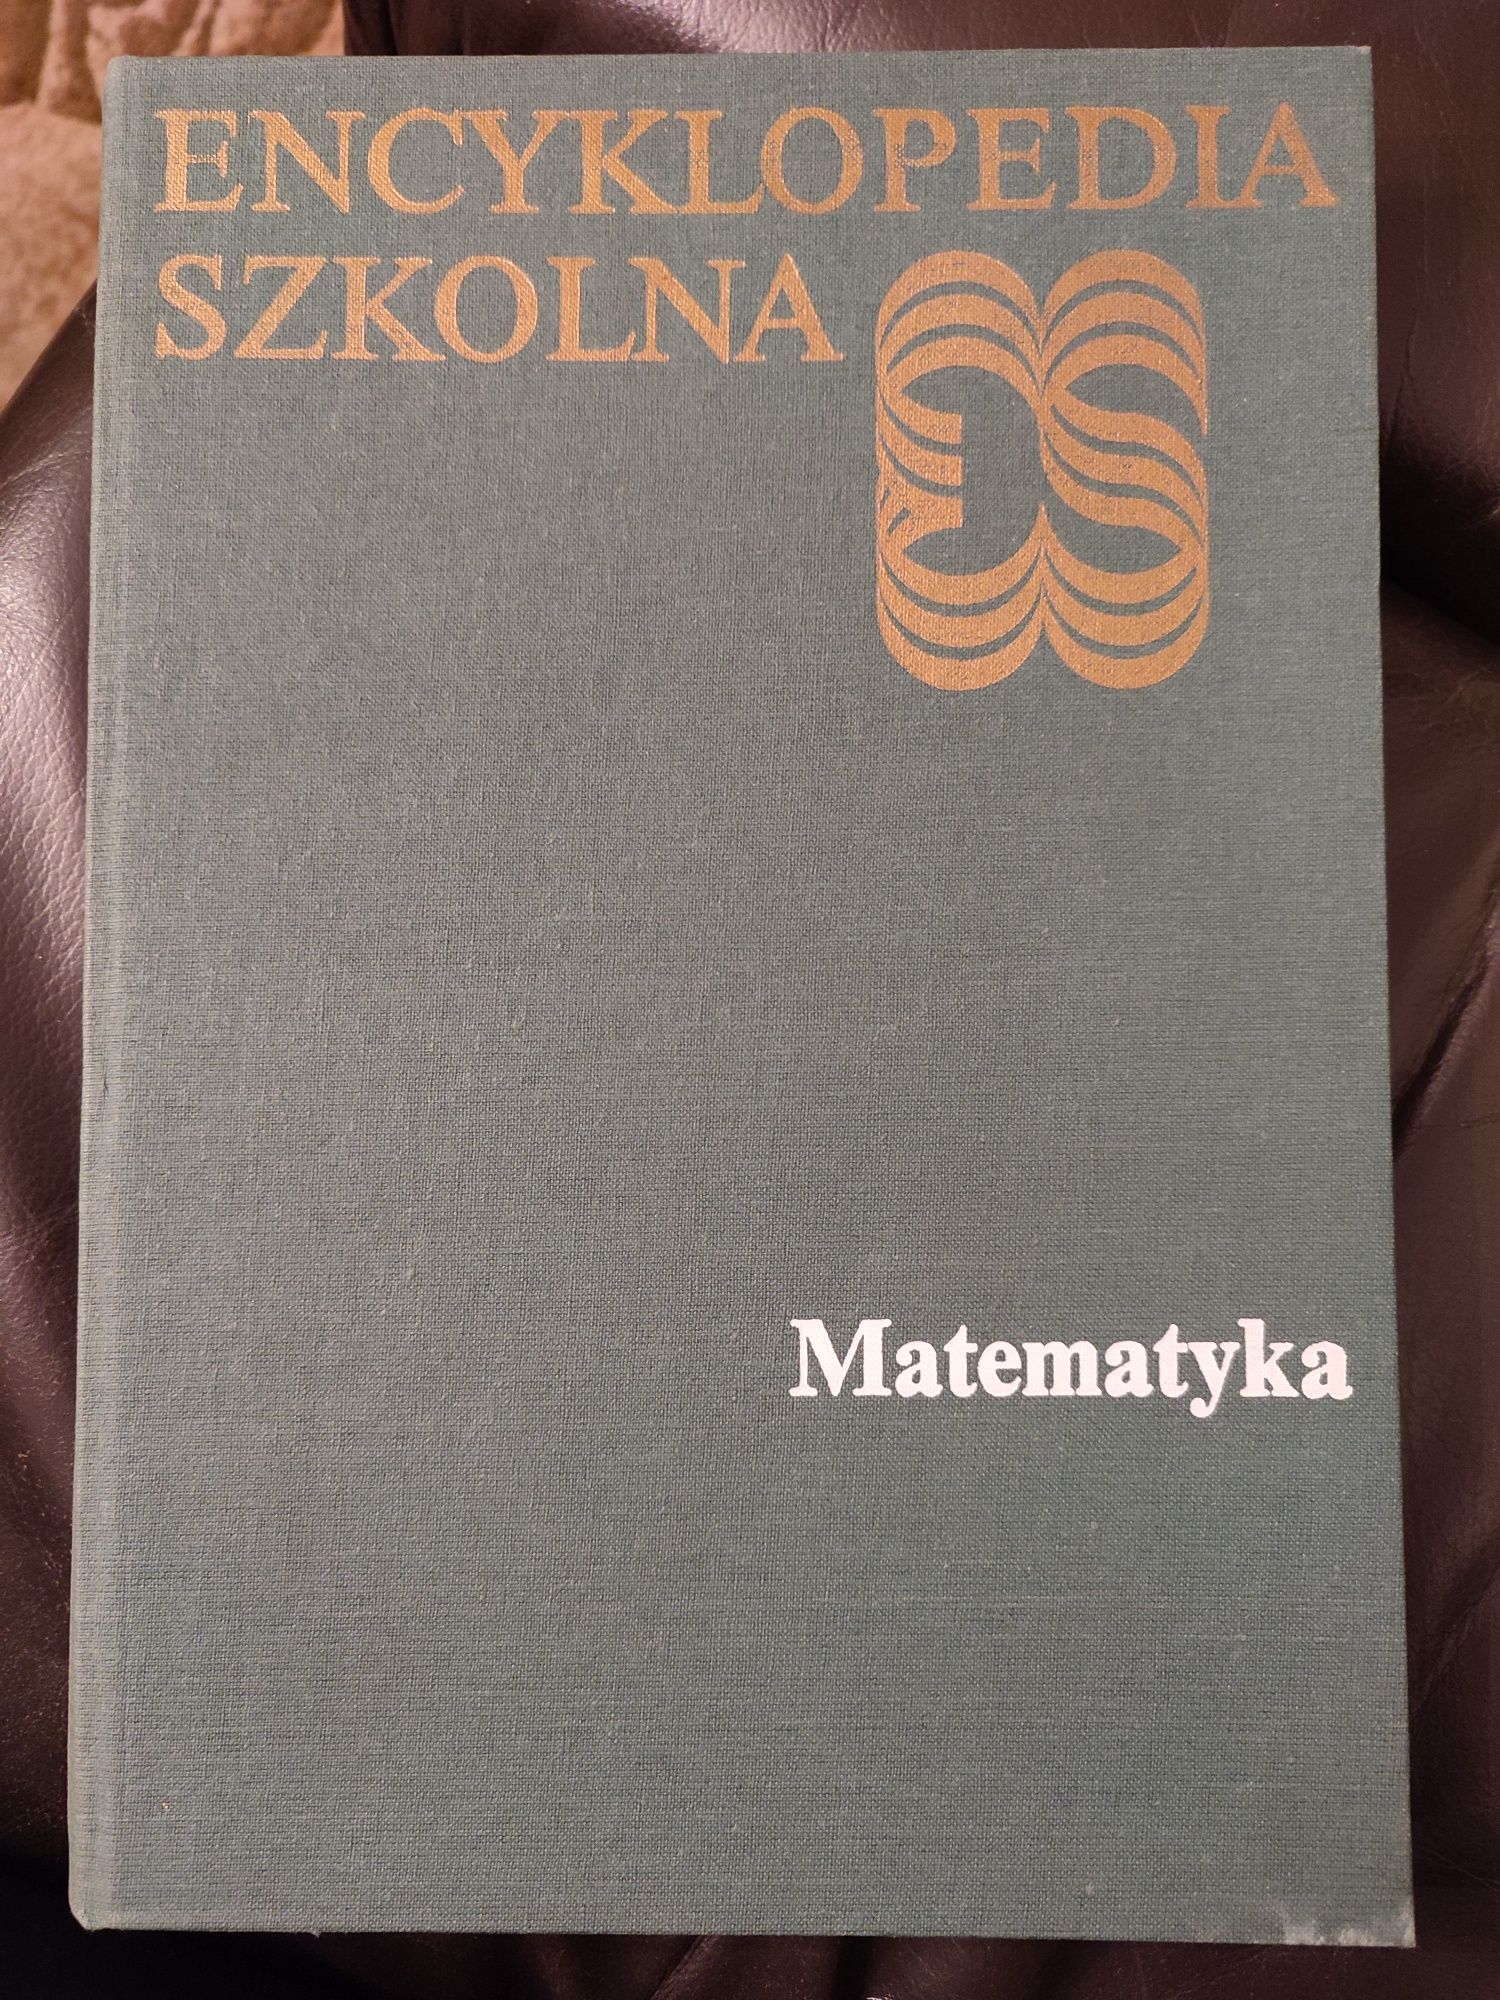 Encyklopedia szkolna matematyka 1988